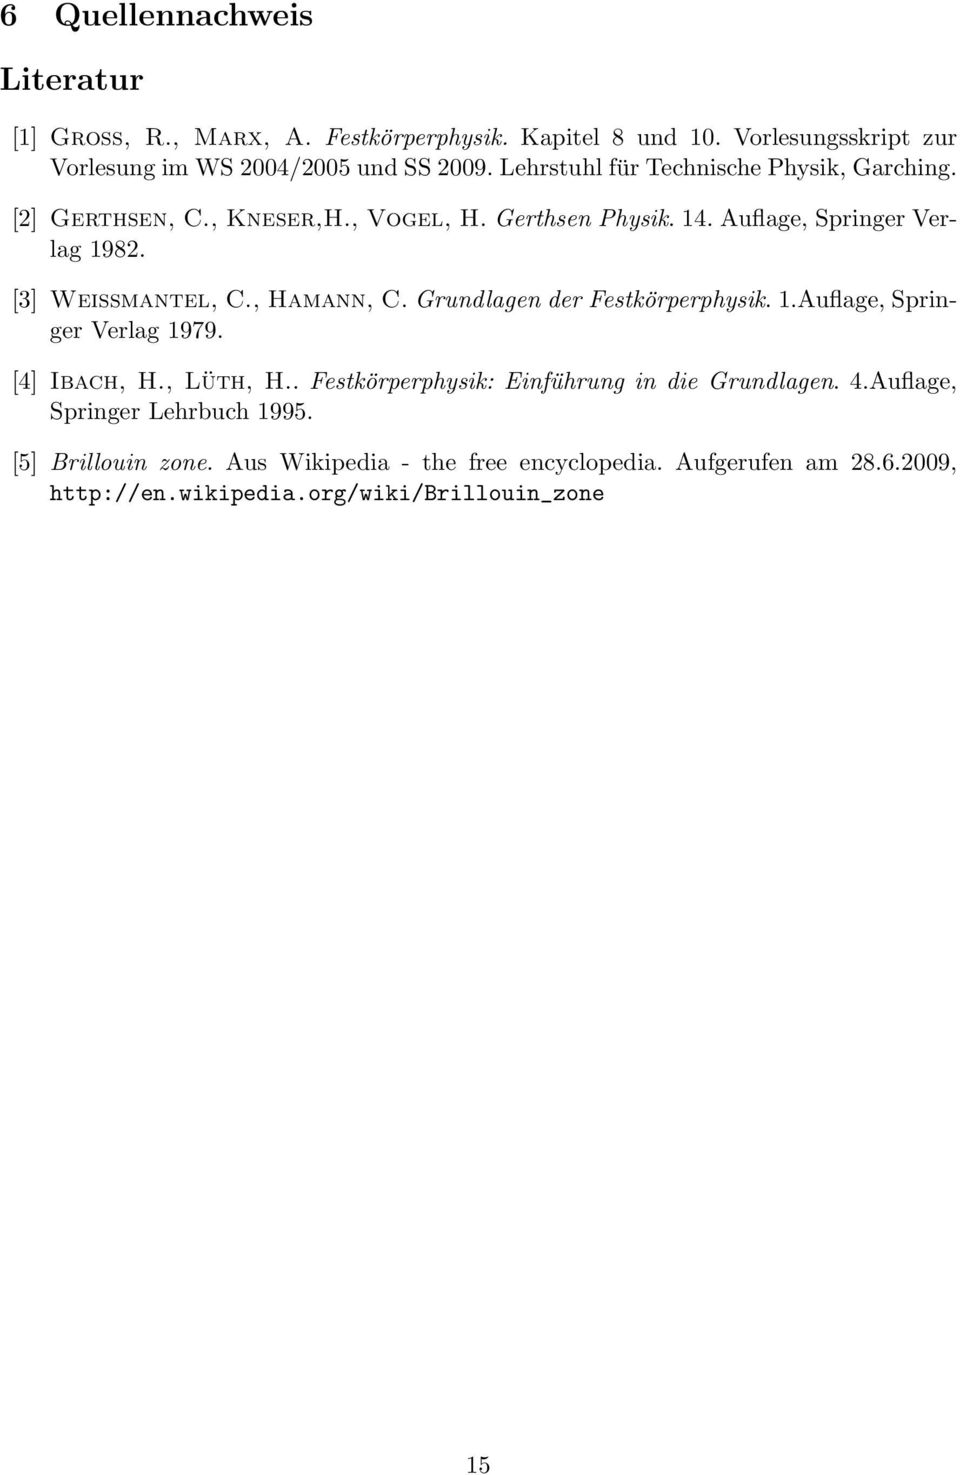 , Hamann, C. Grundlagen der Festkörperphysik. 1.Auflage, Springer Verlag 1979. [4] Ibach, H., Lüth, H.. Festkörperphysik: Einführung in die Grundlagen. 4.